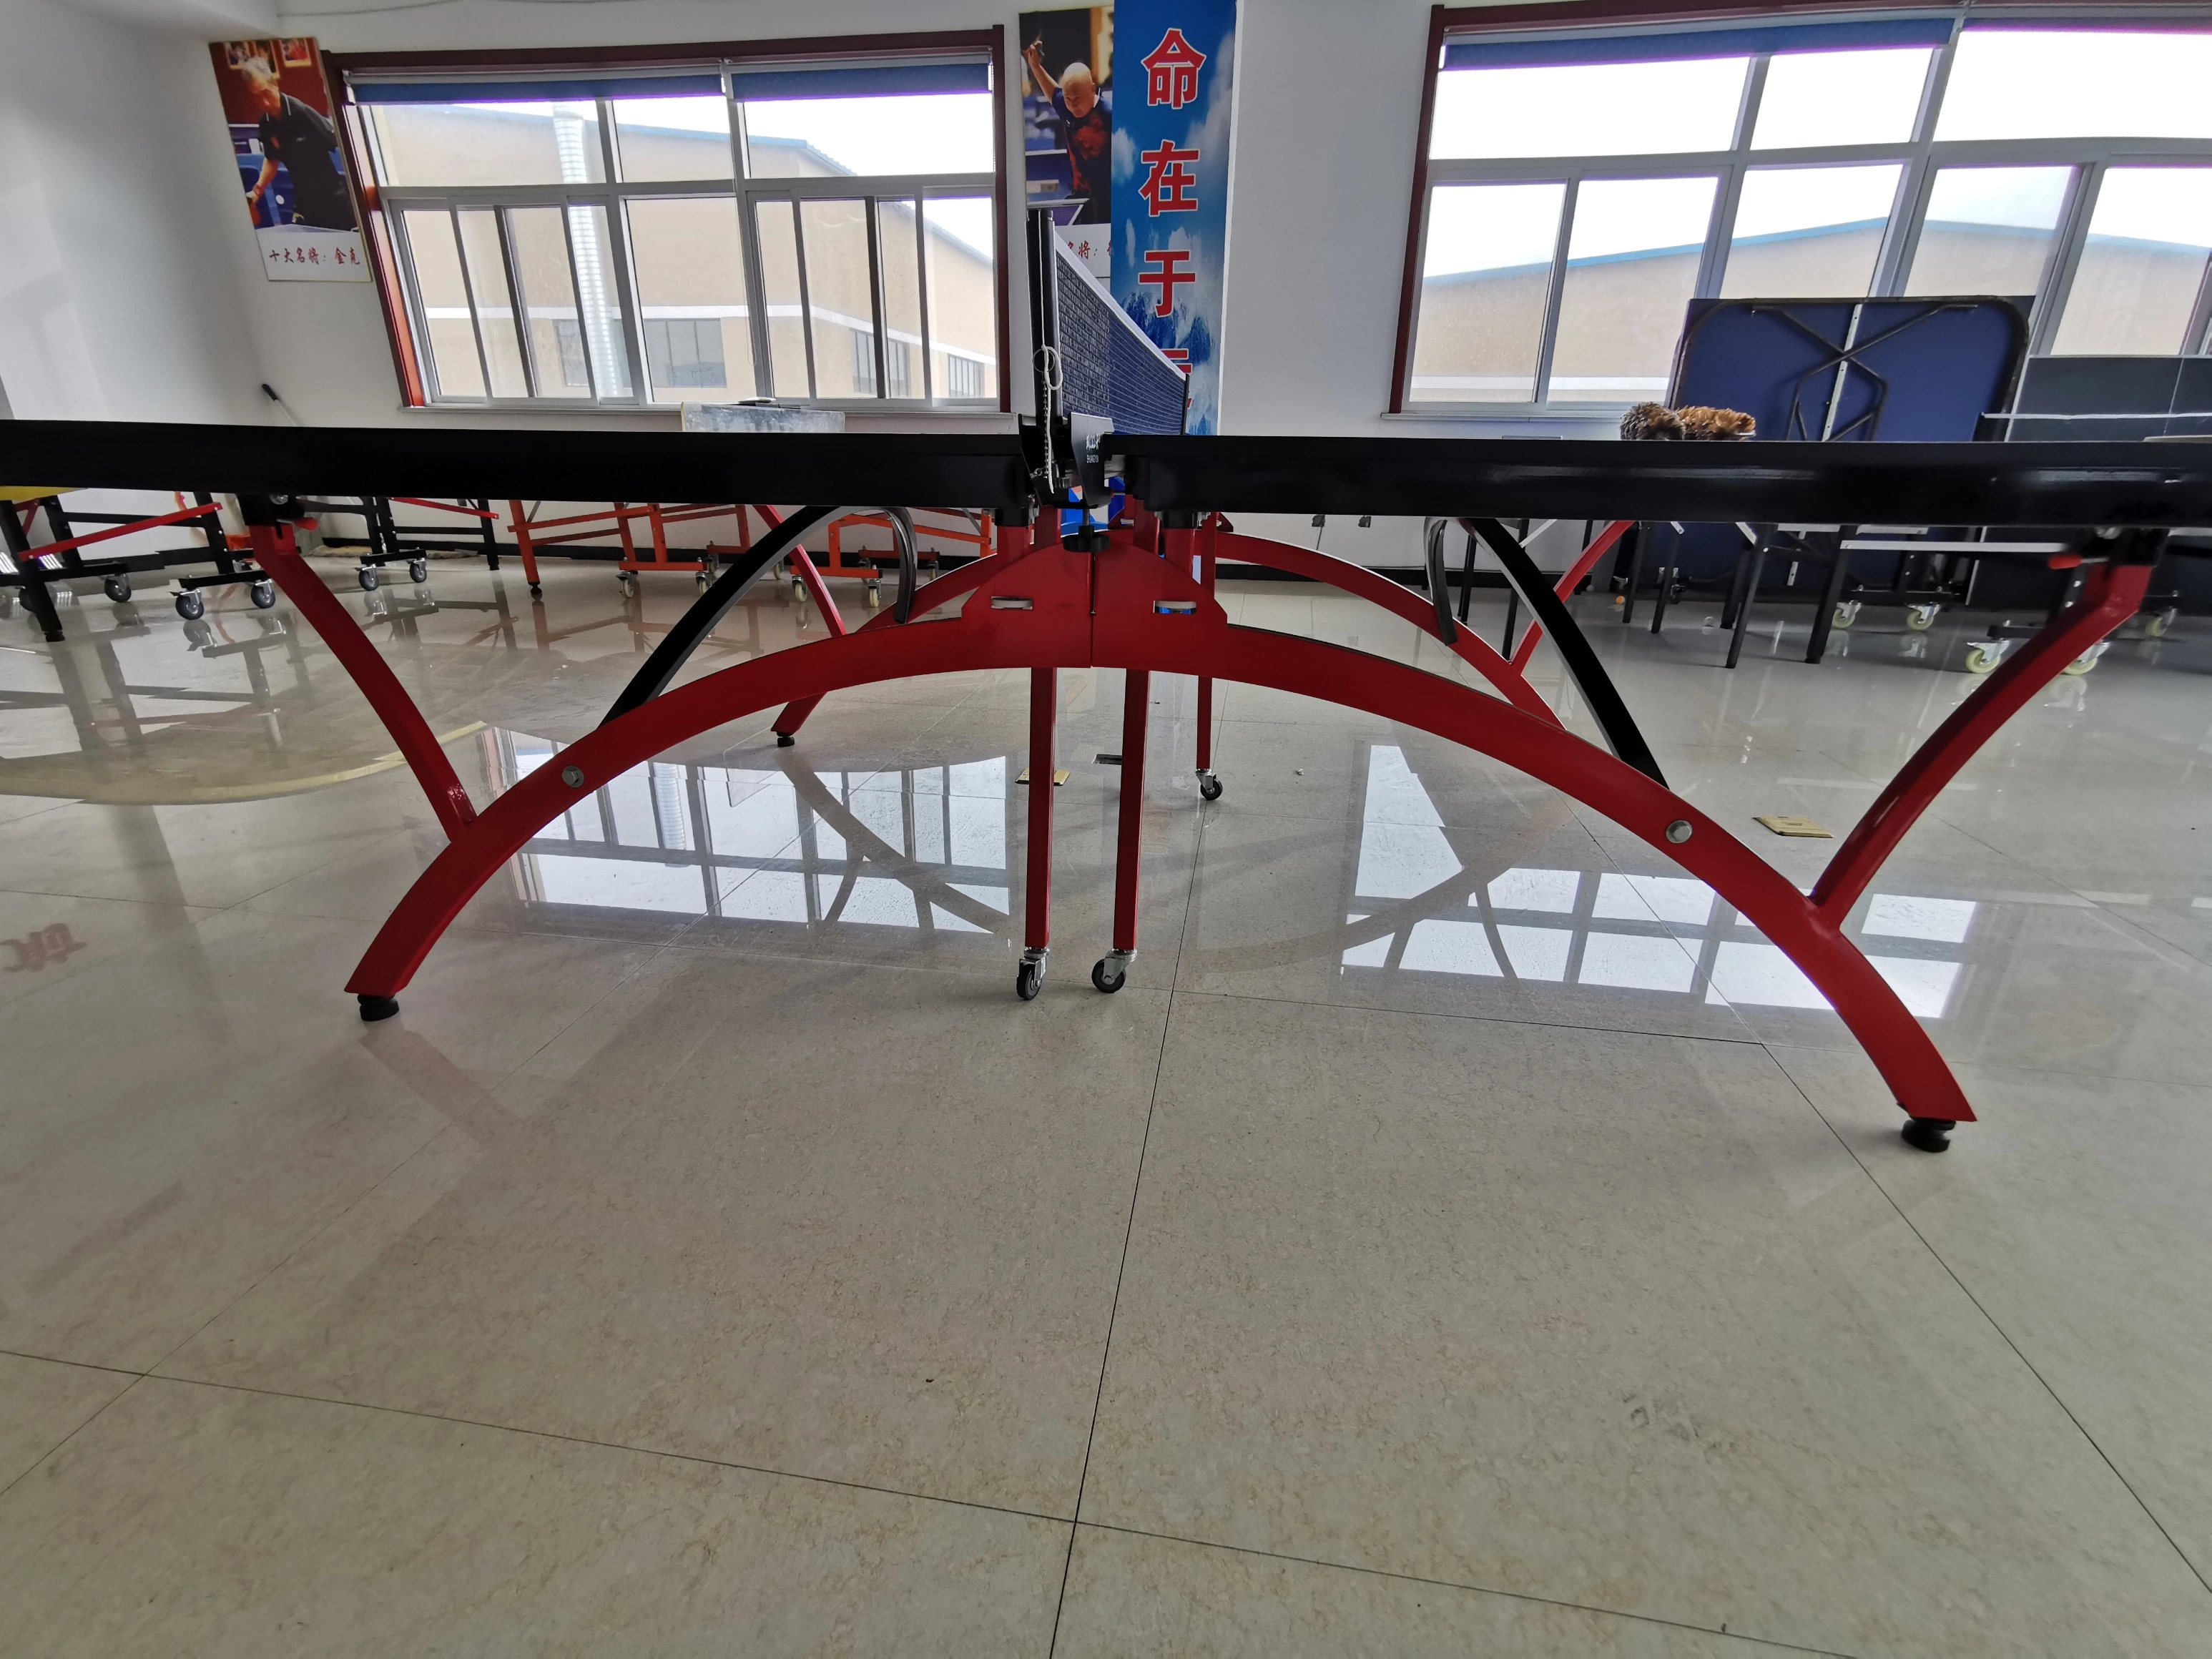 Indoor Advanced Roll-Away pliage double table de tennis, ping-pong Accueil Salle de gym de l'équipement